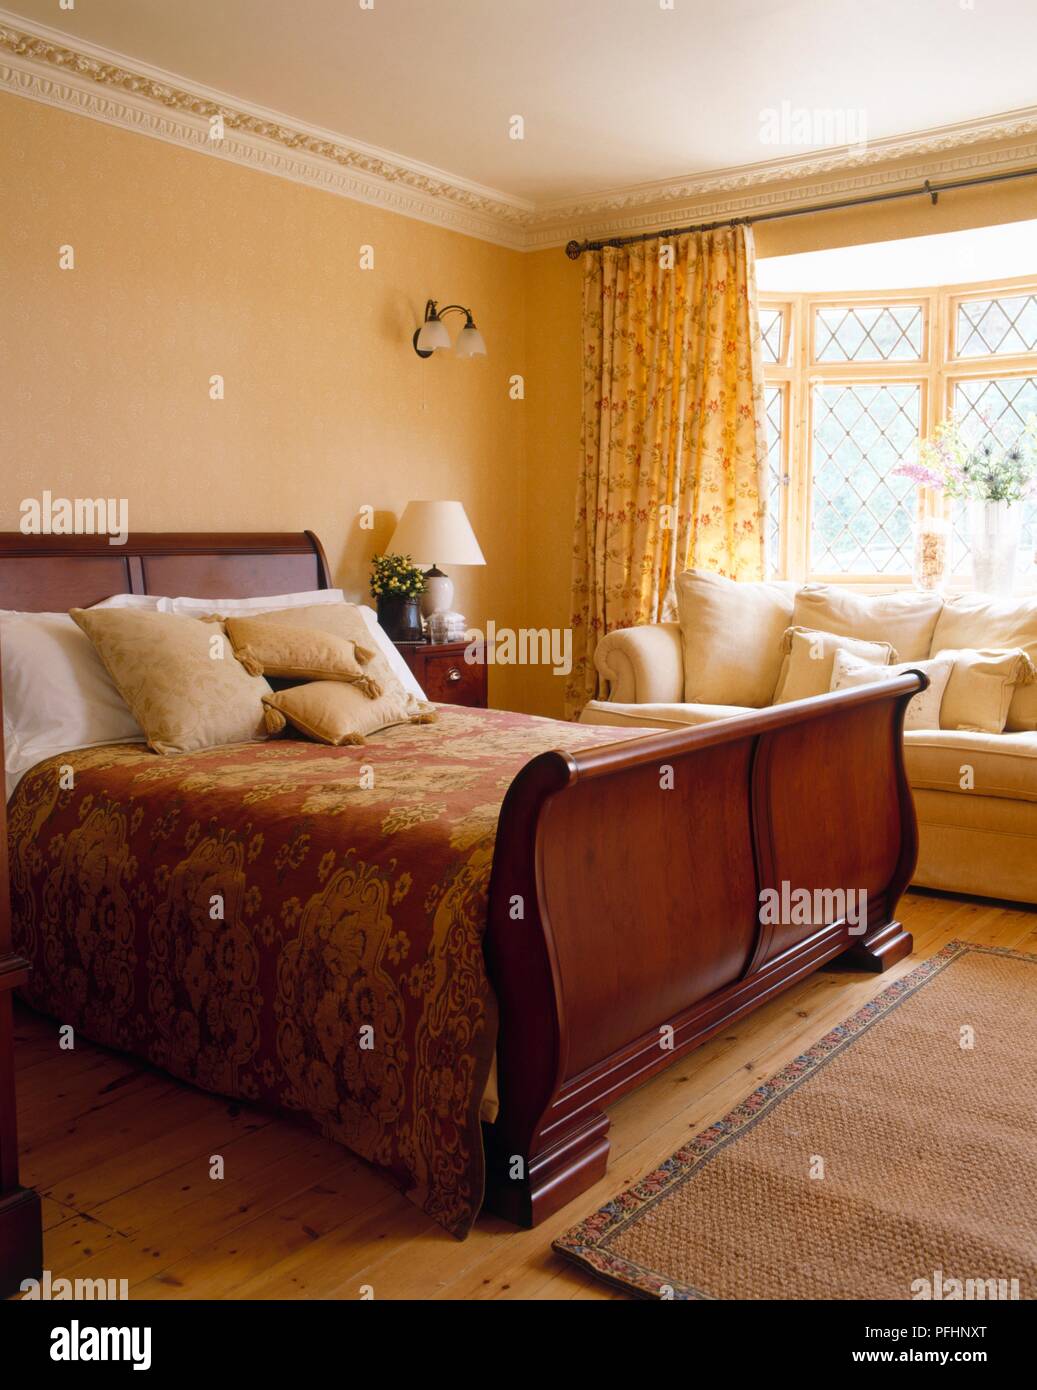 Dormitorio doble con cama trineo y sofá de color crema Fotografía de stock  - Alamy